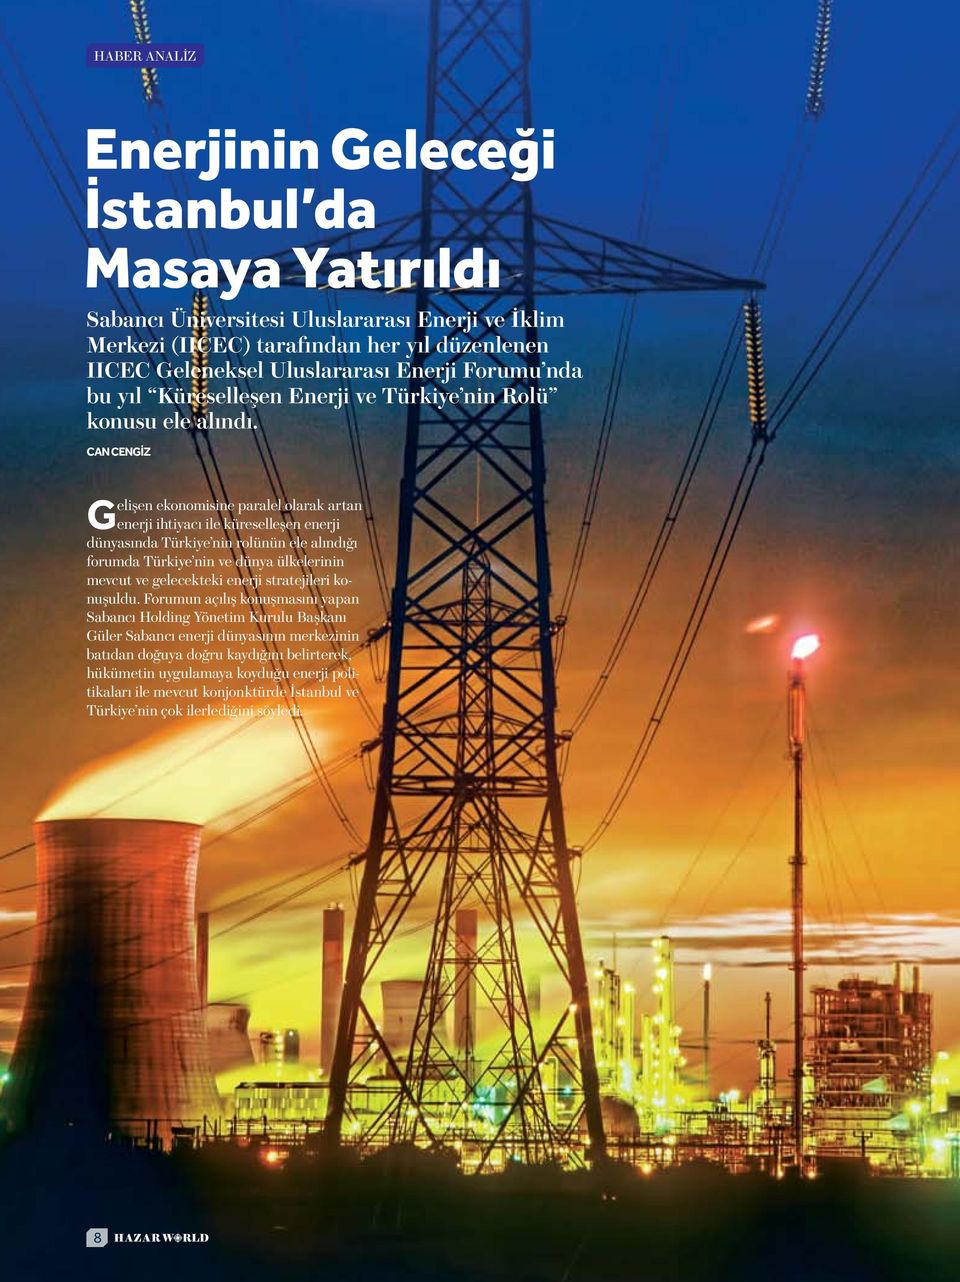 Can CENGİZ Gelişen ekonomisine paralel olarak artan enerji ihtiyacı ile küreselleşen enerji dünyasında Türkiye nin rolünün ele alındığı forumda Türkiye nin ve dünya ülkelerinin mevcut ve